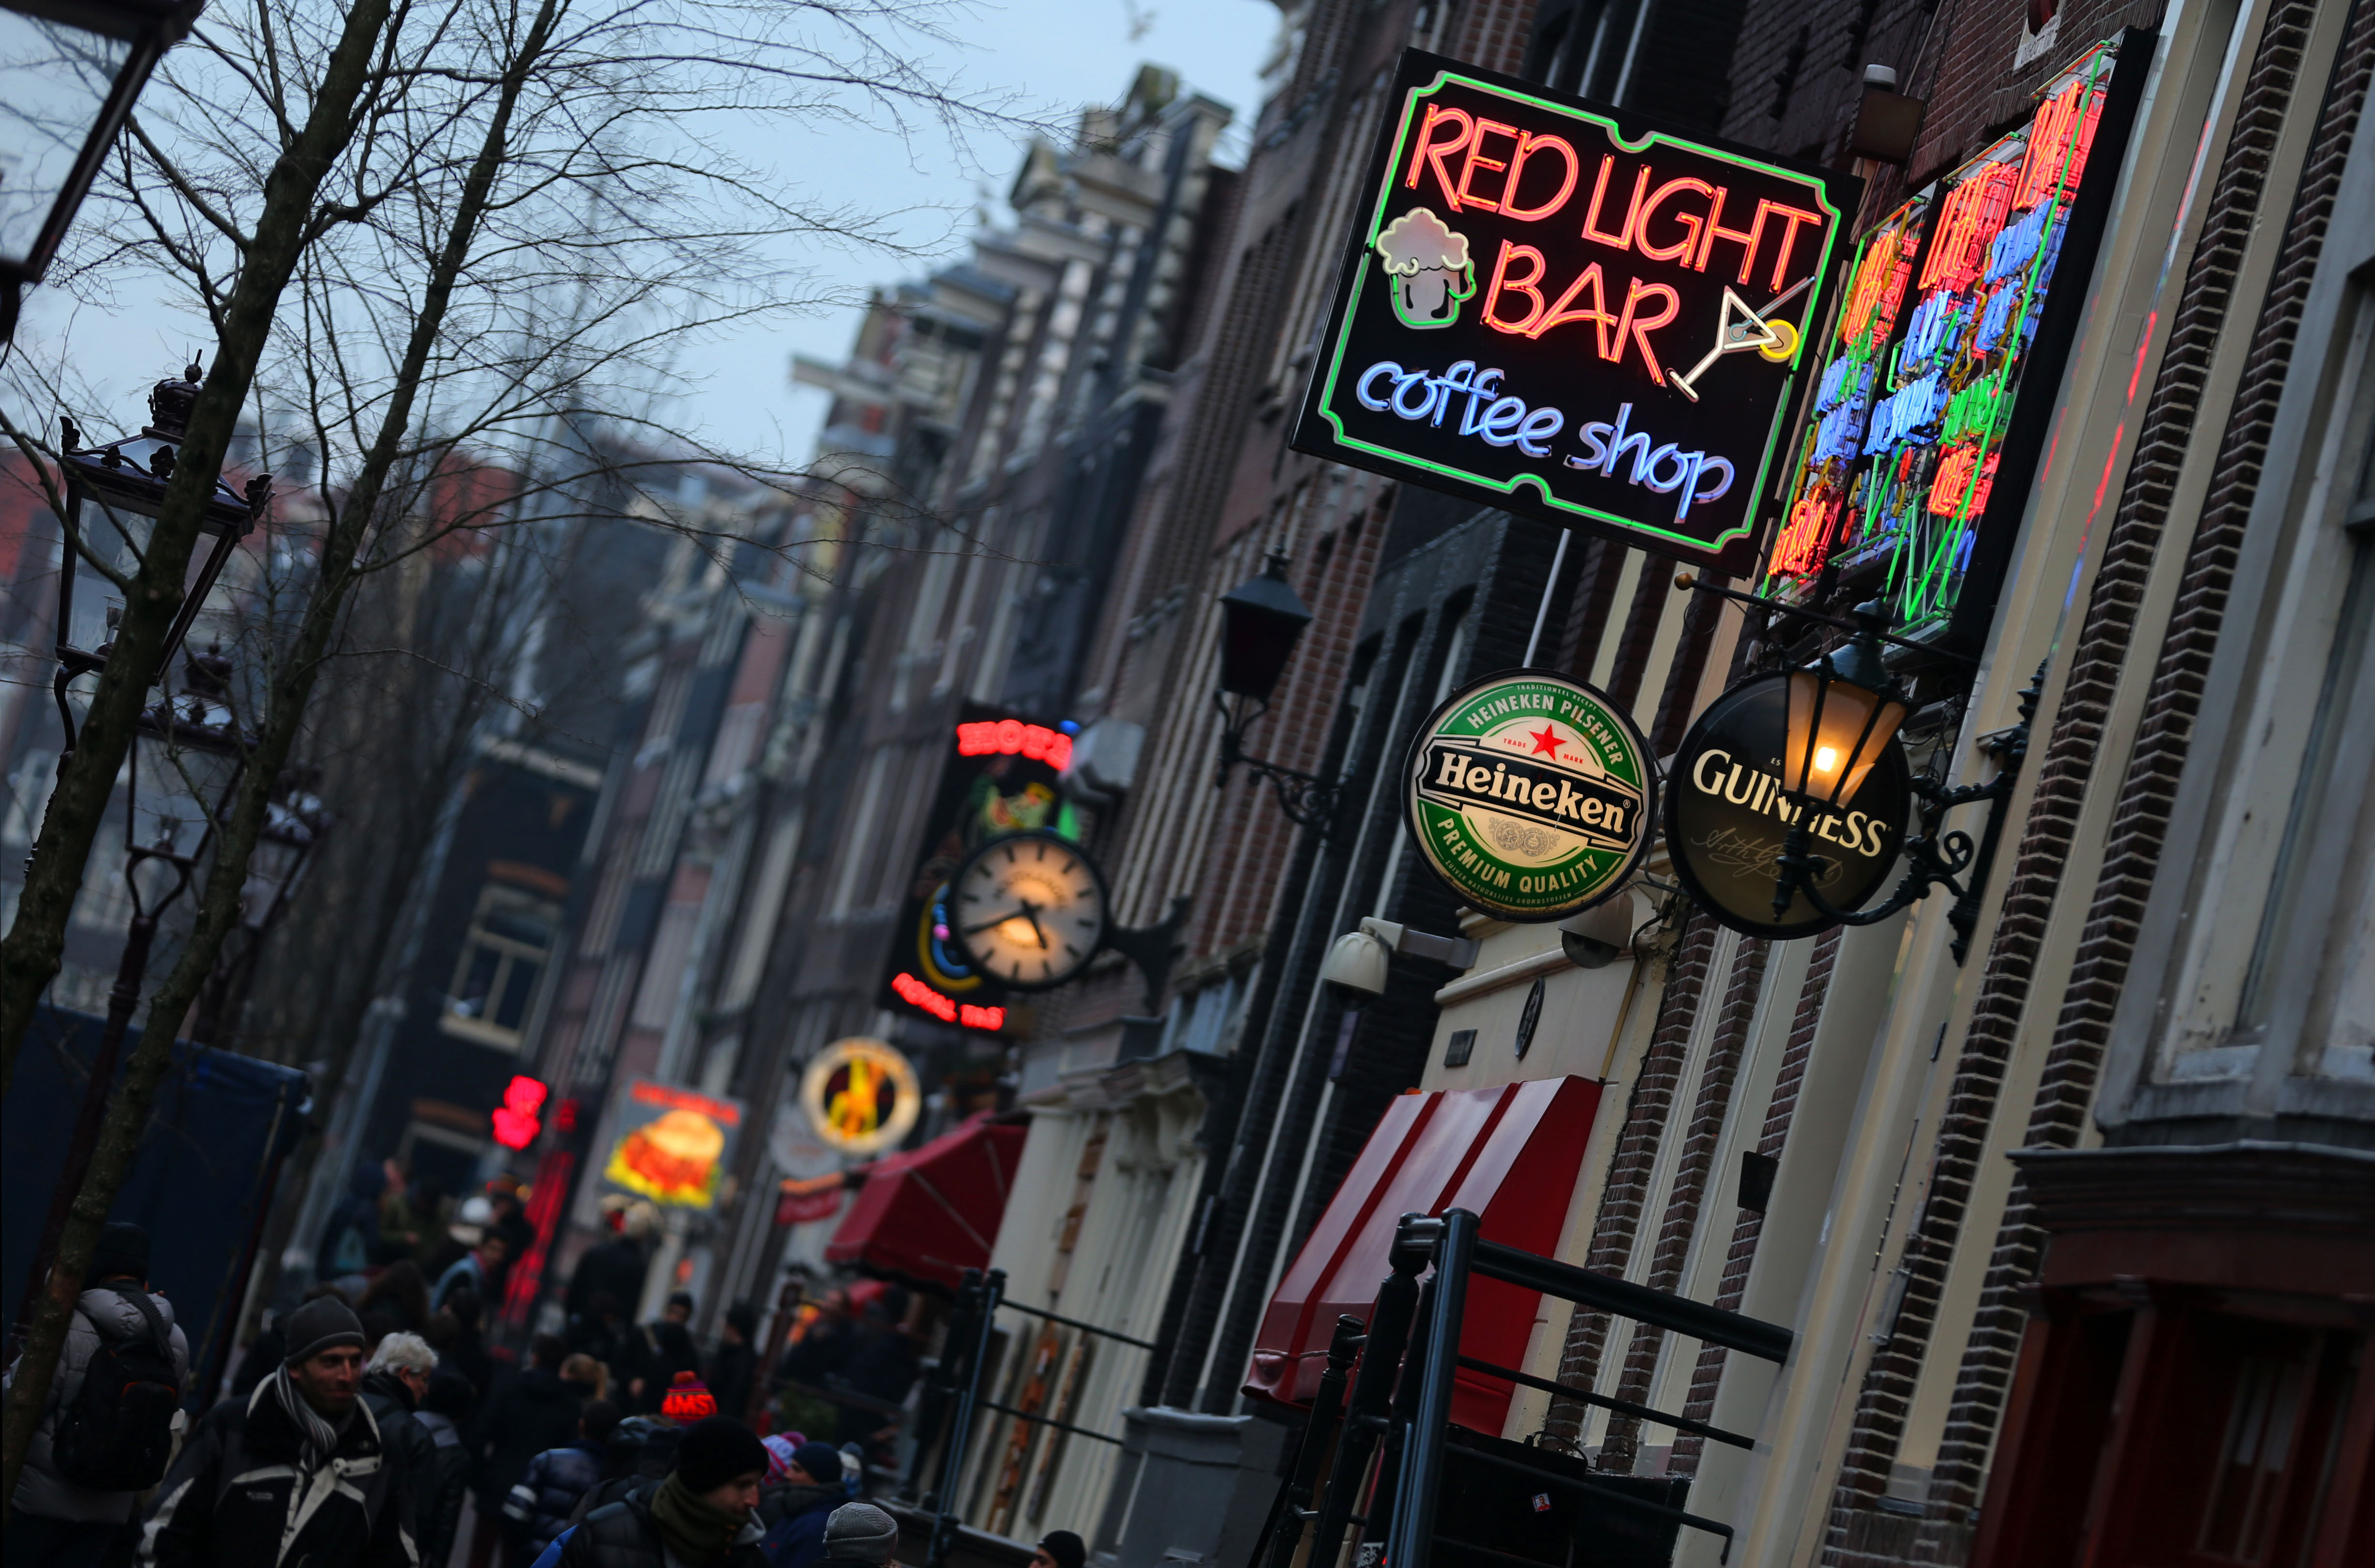 Eine Lokal in Amsterdam, das Bar und Coffeeshop zugleich ist.